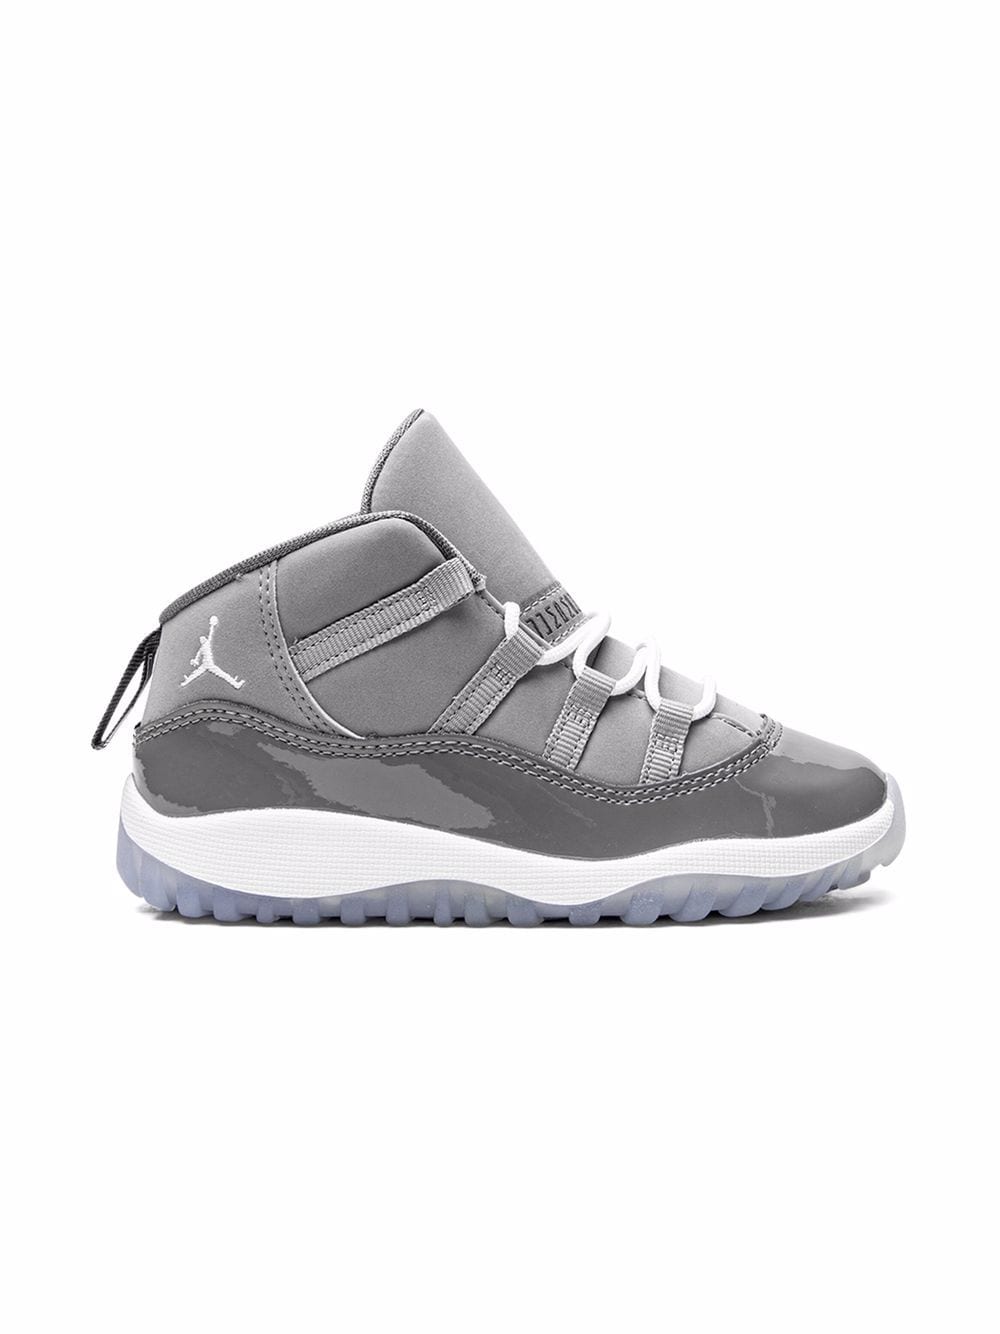 Image 2 of Jordan Kids Jordan 11 Retro "Cool Grey 2021" sneakers